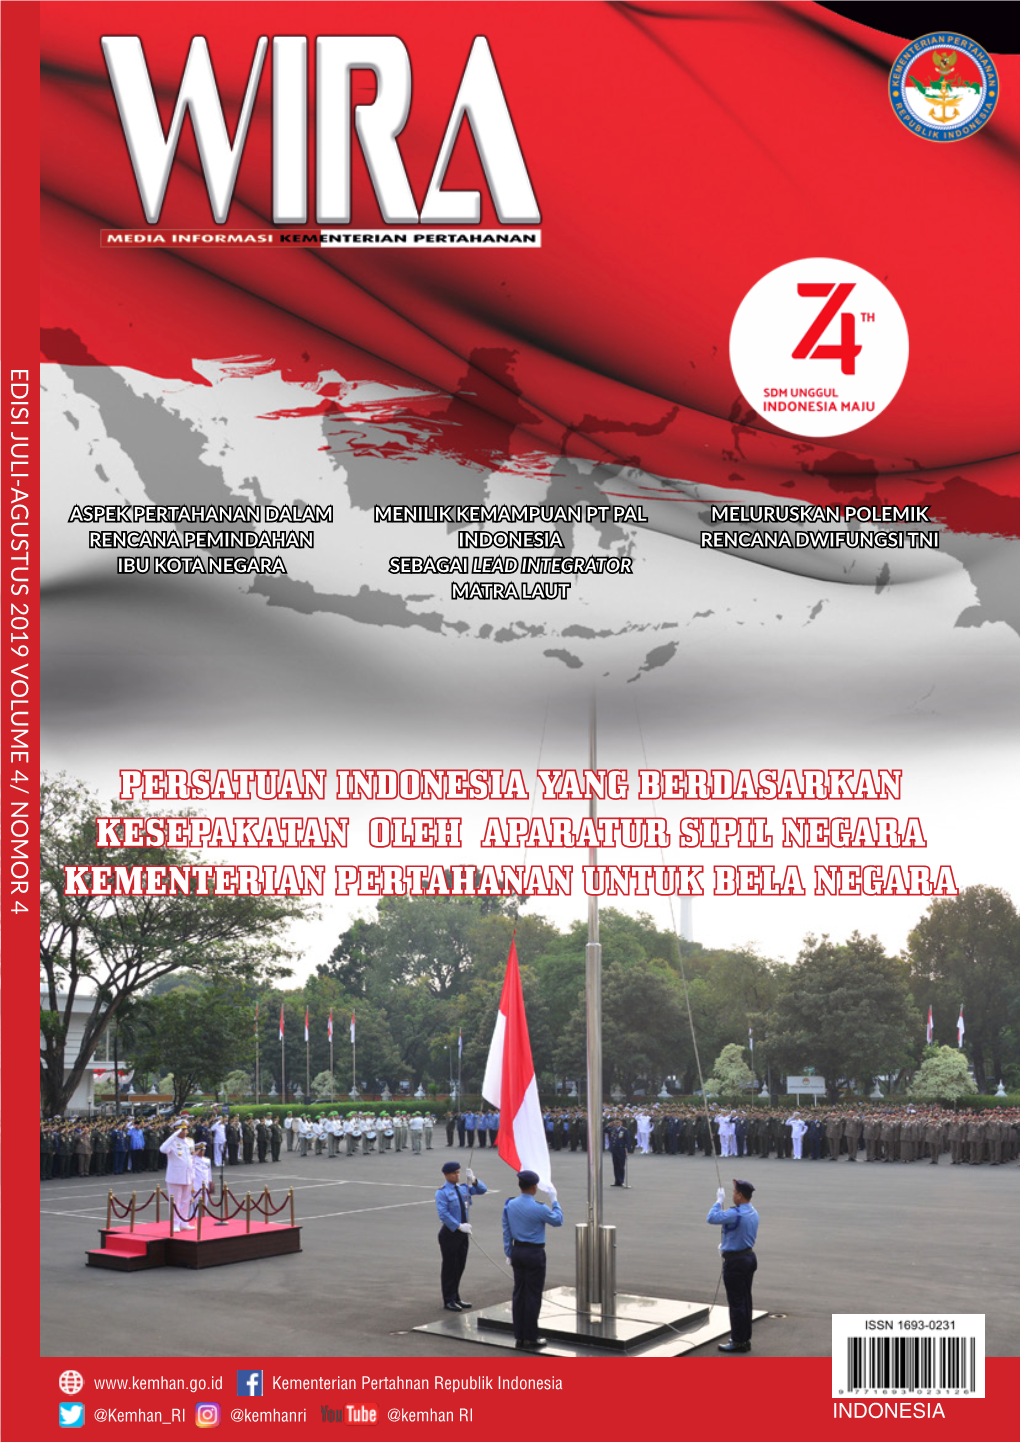 Persatuan Indonesia Yang Berdasarkan Kesepakatan Oleh Aparatur Sipil Negara Kementerian Pertahanan Untuk Bela Negara